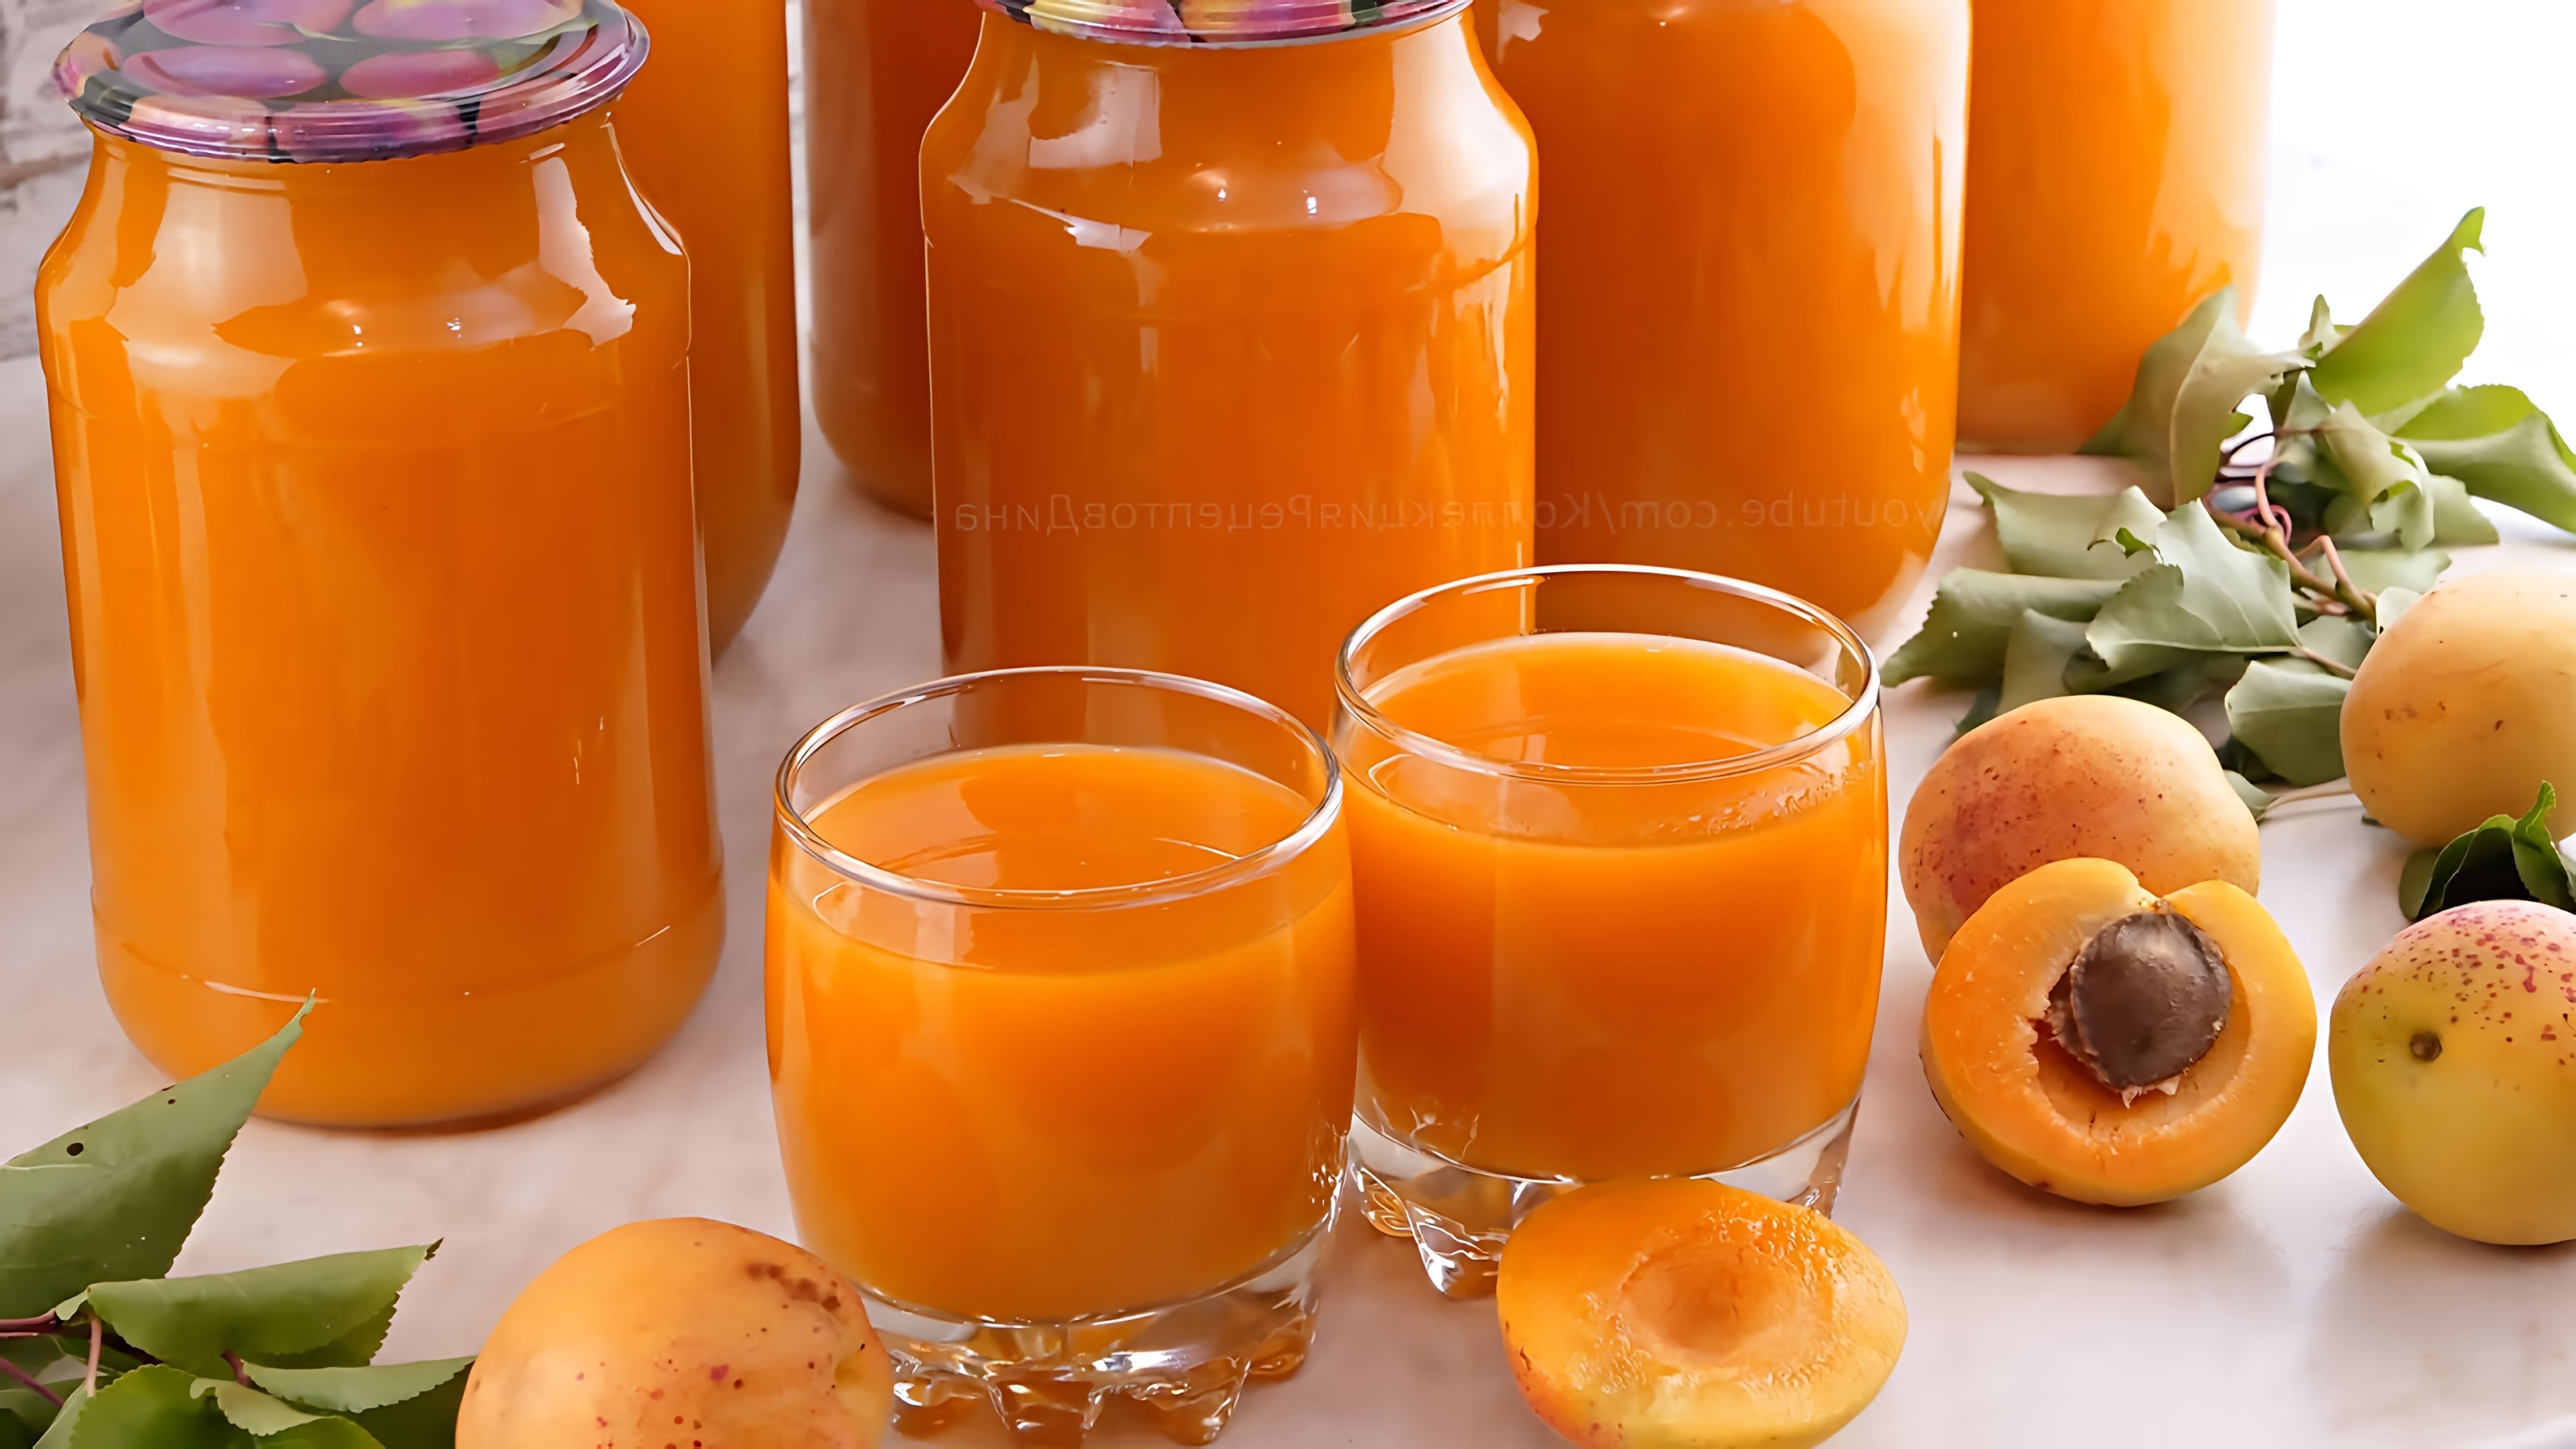 В этом видео демонстрируется процесс приготовления абрикосового сока на зиму в домашних условиях без использования соковыжималки